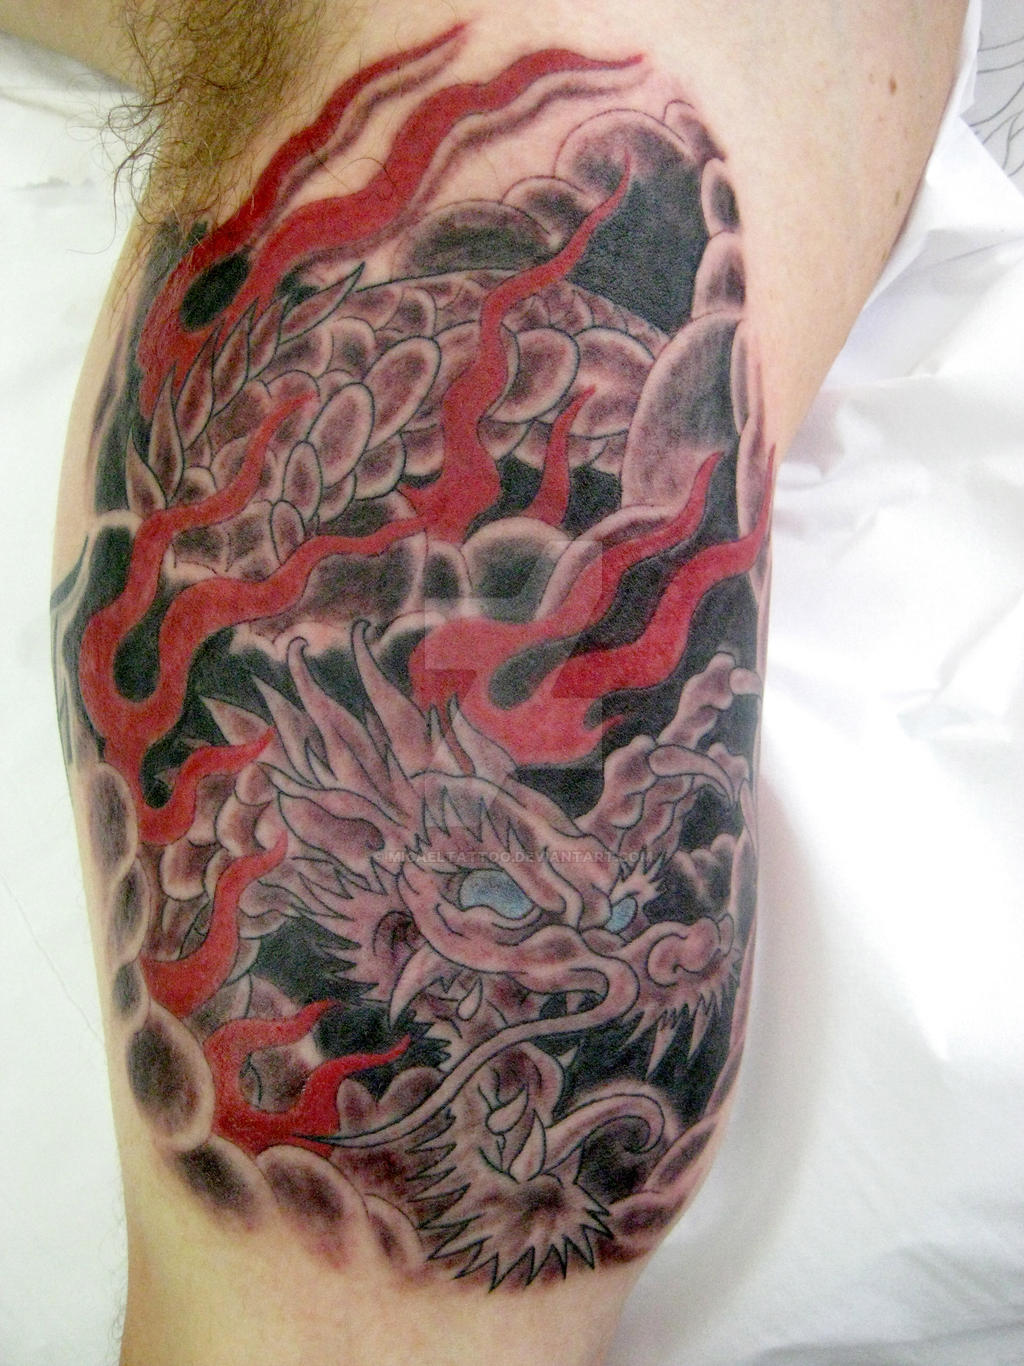 Oriental dragon tattoo